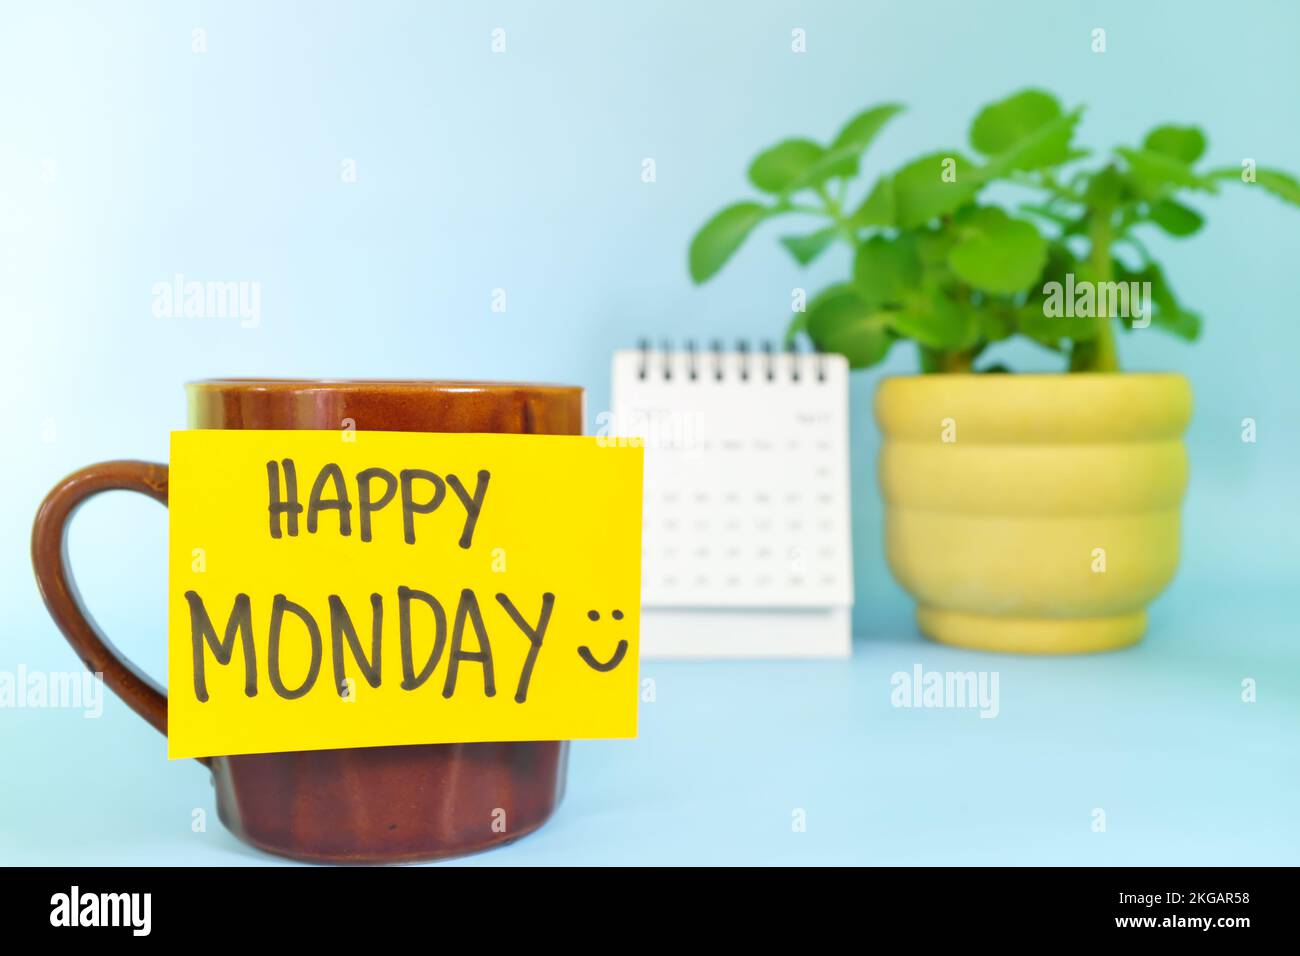 Willkommen, hallo und Happy Monday Concept. Selektiver Fokus der Kaffeetasse mit hellgelbem Zettel und schriftlicher Nachricht. Stockfoto